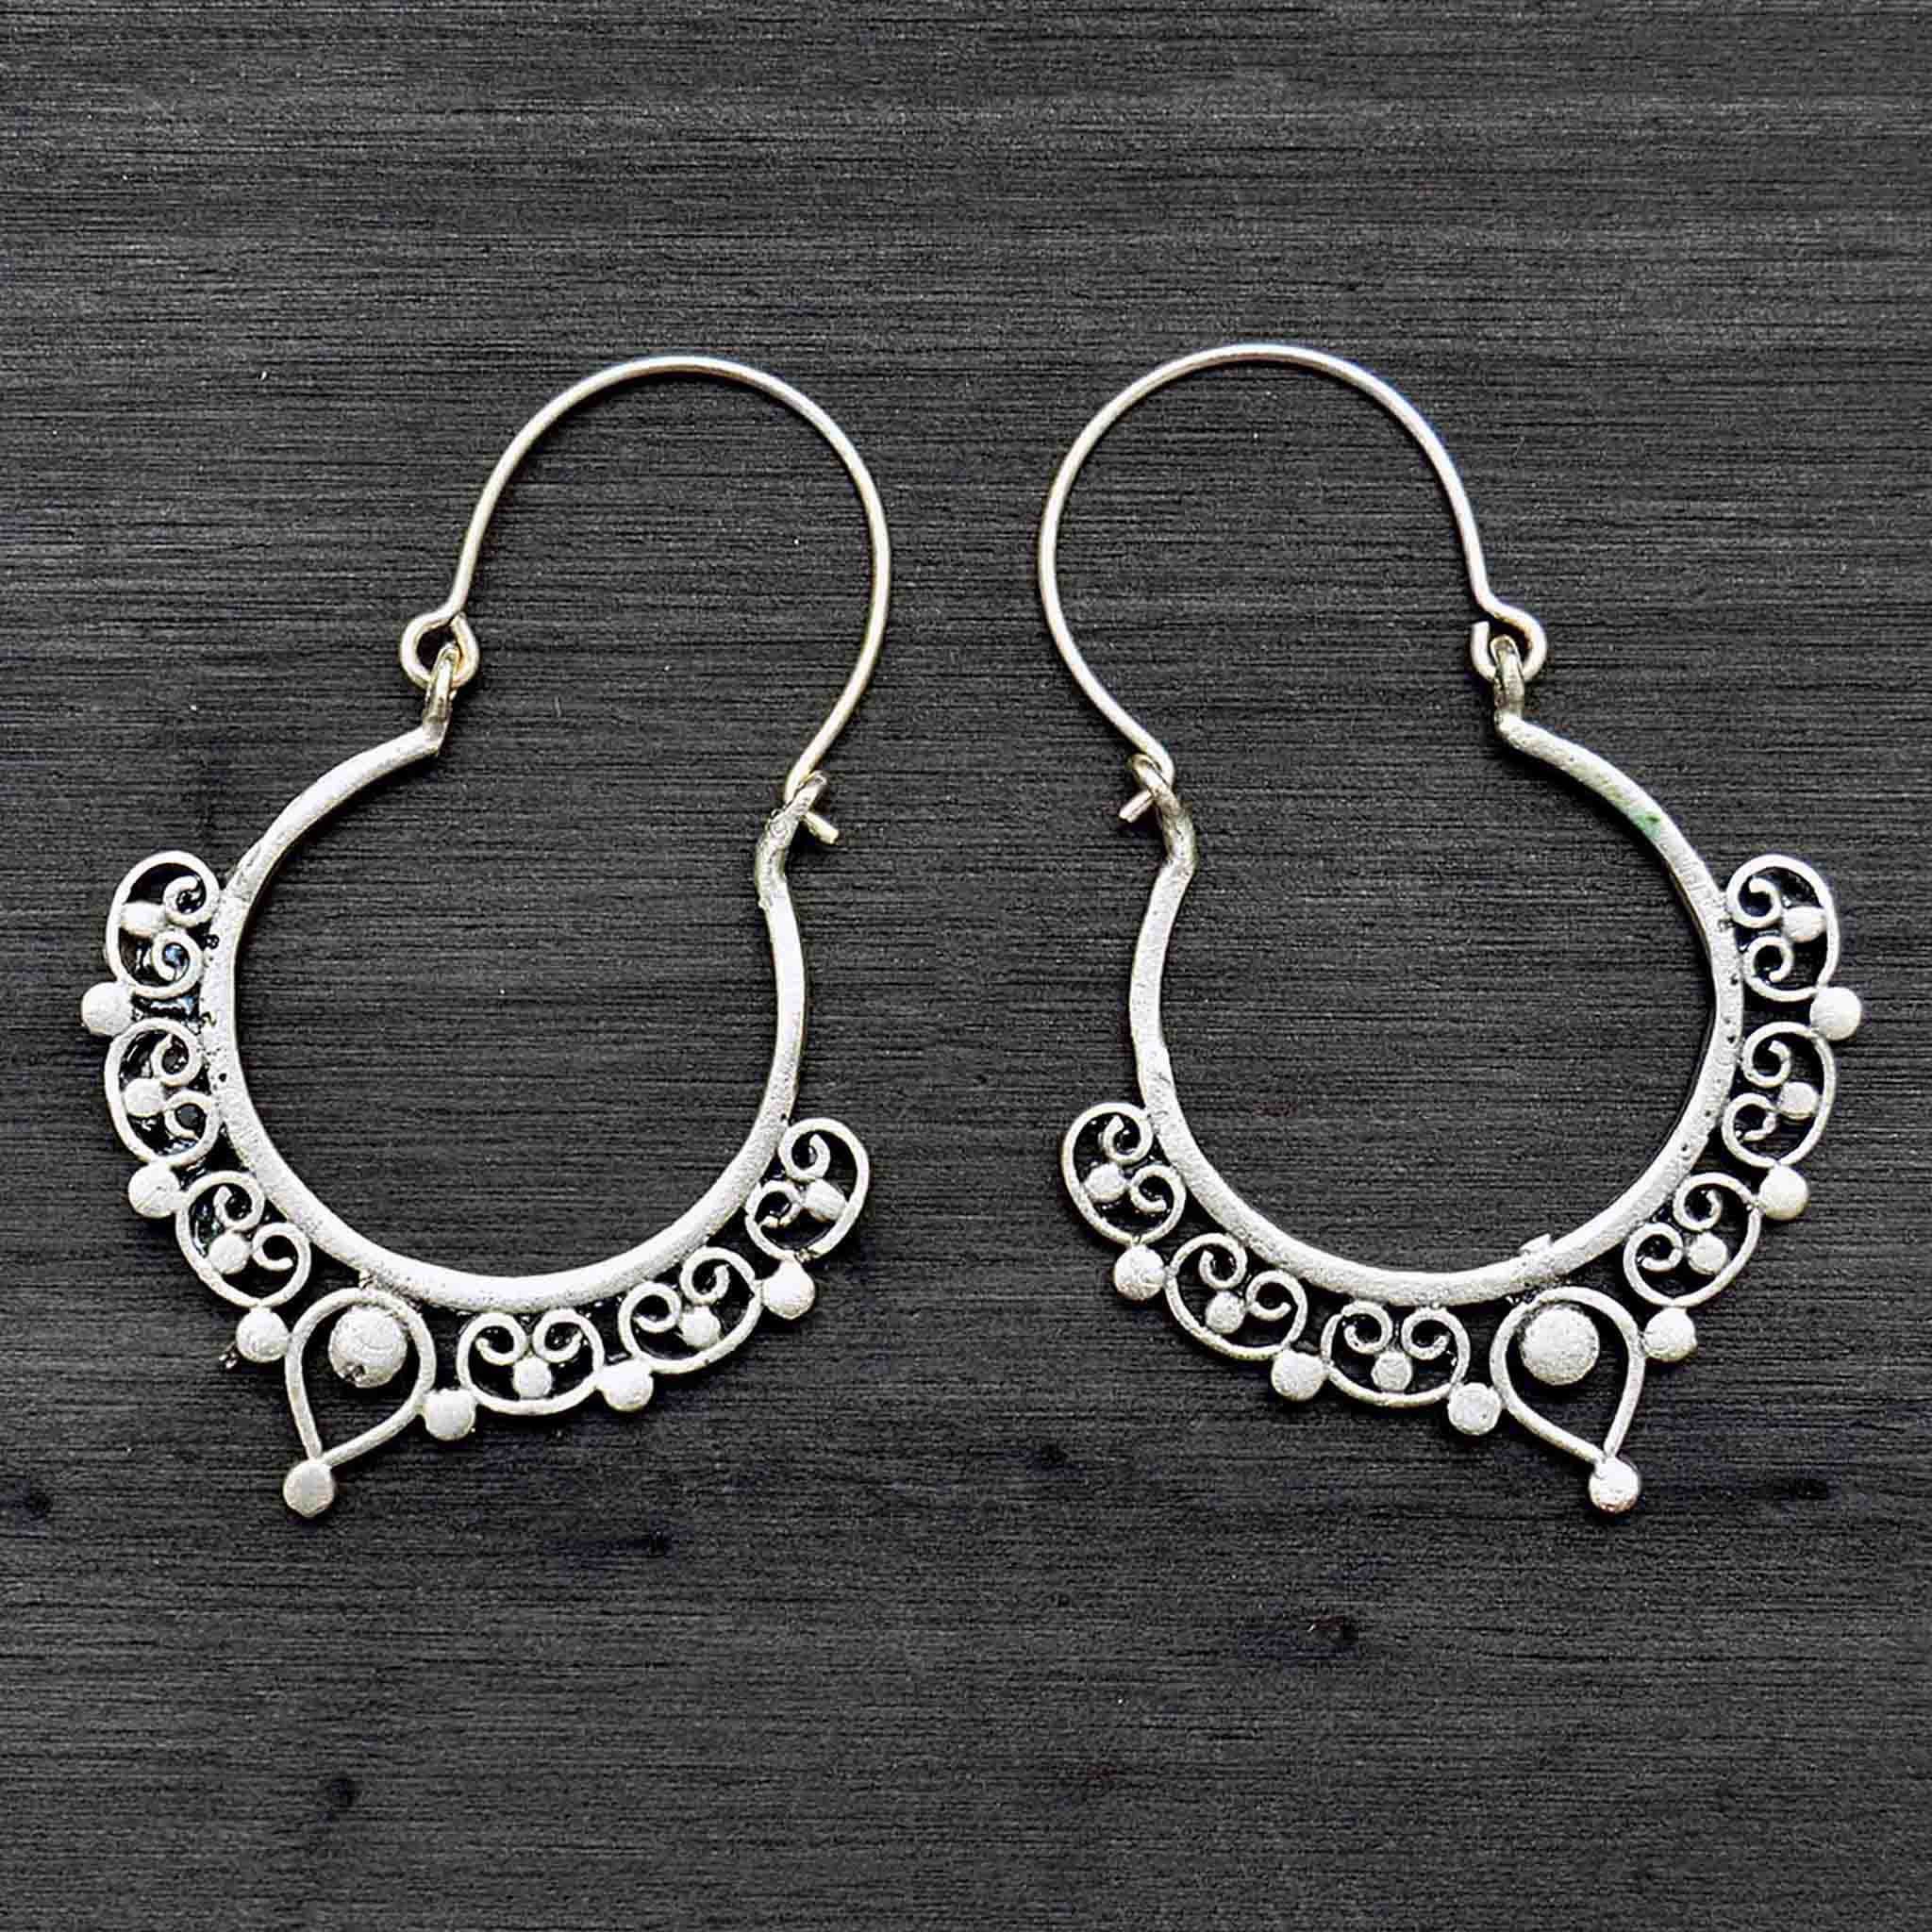 Silver tribal banjara hoop earrings on black background